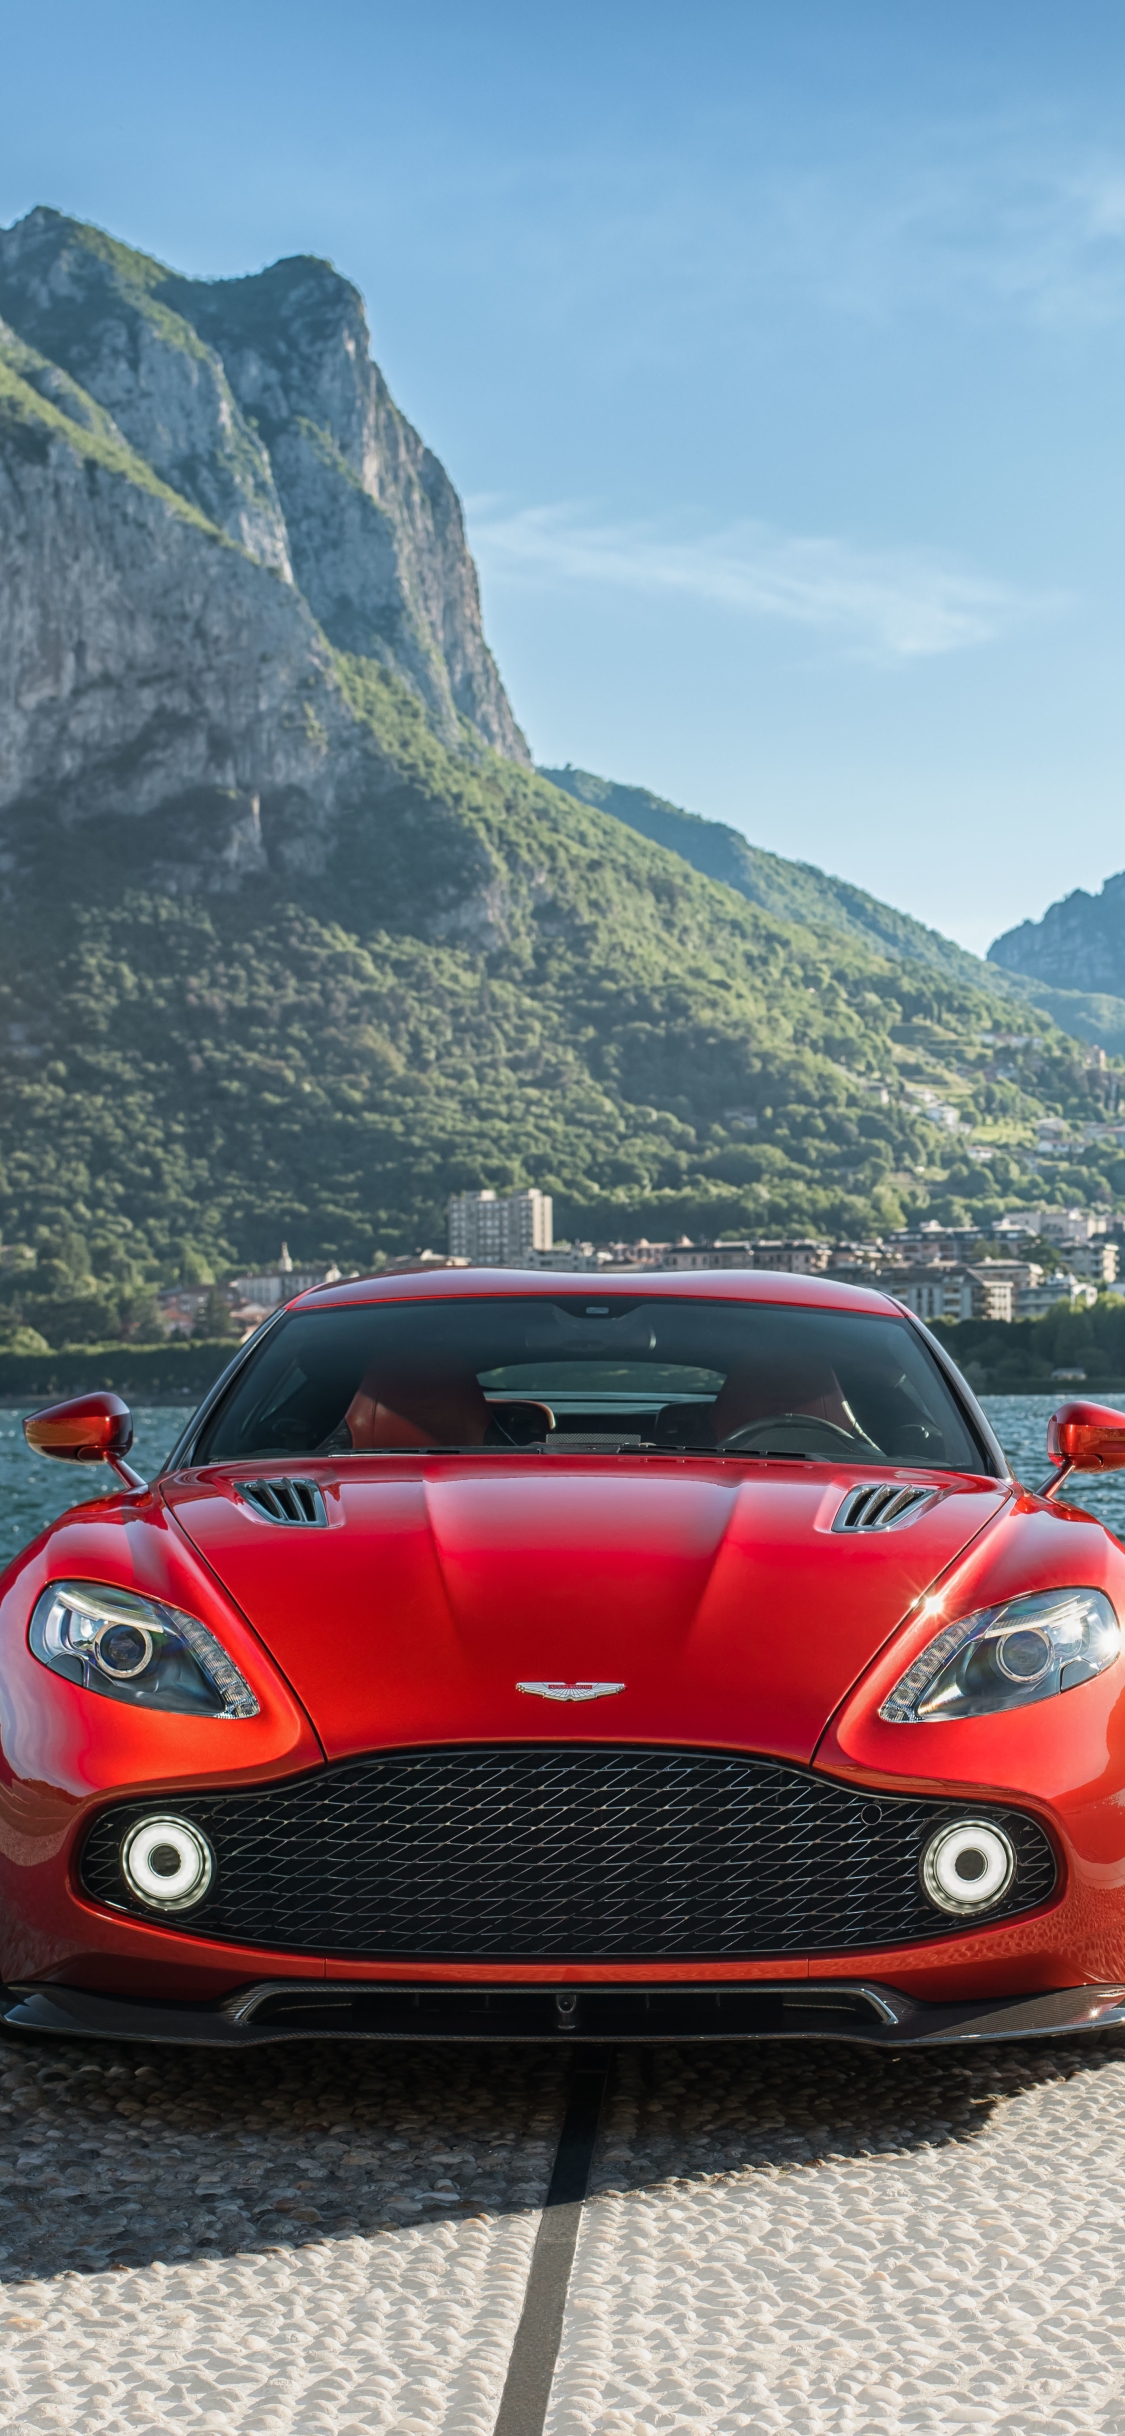 Descarga gratuita de fondo de pantalla para móvil de Aston Martin, Vehículos, Coupé, Aston Martin Vanquish Zagato.